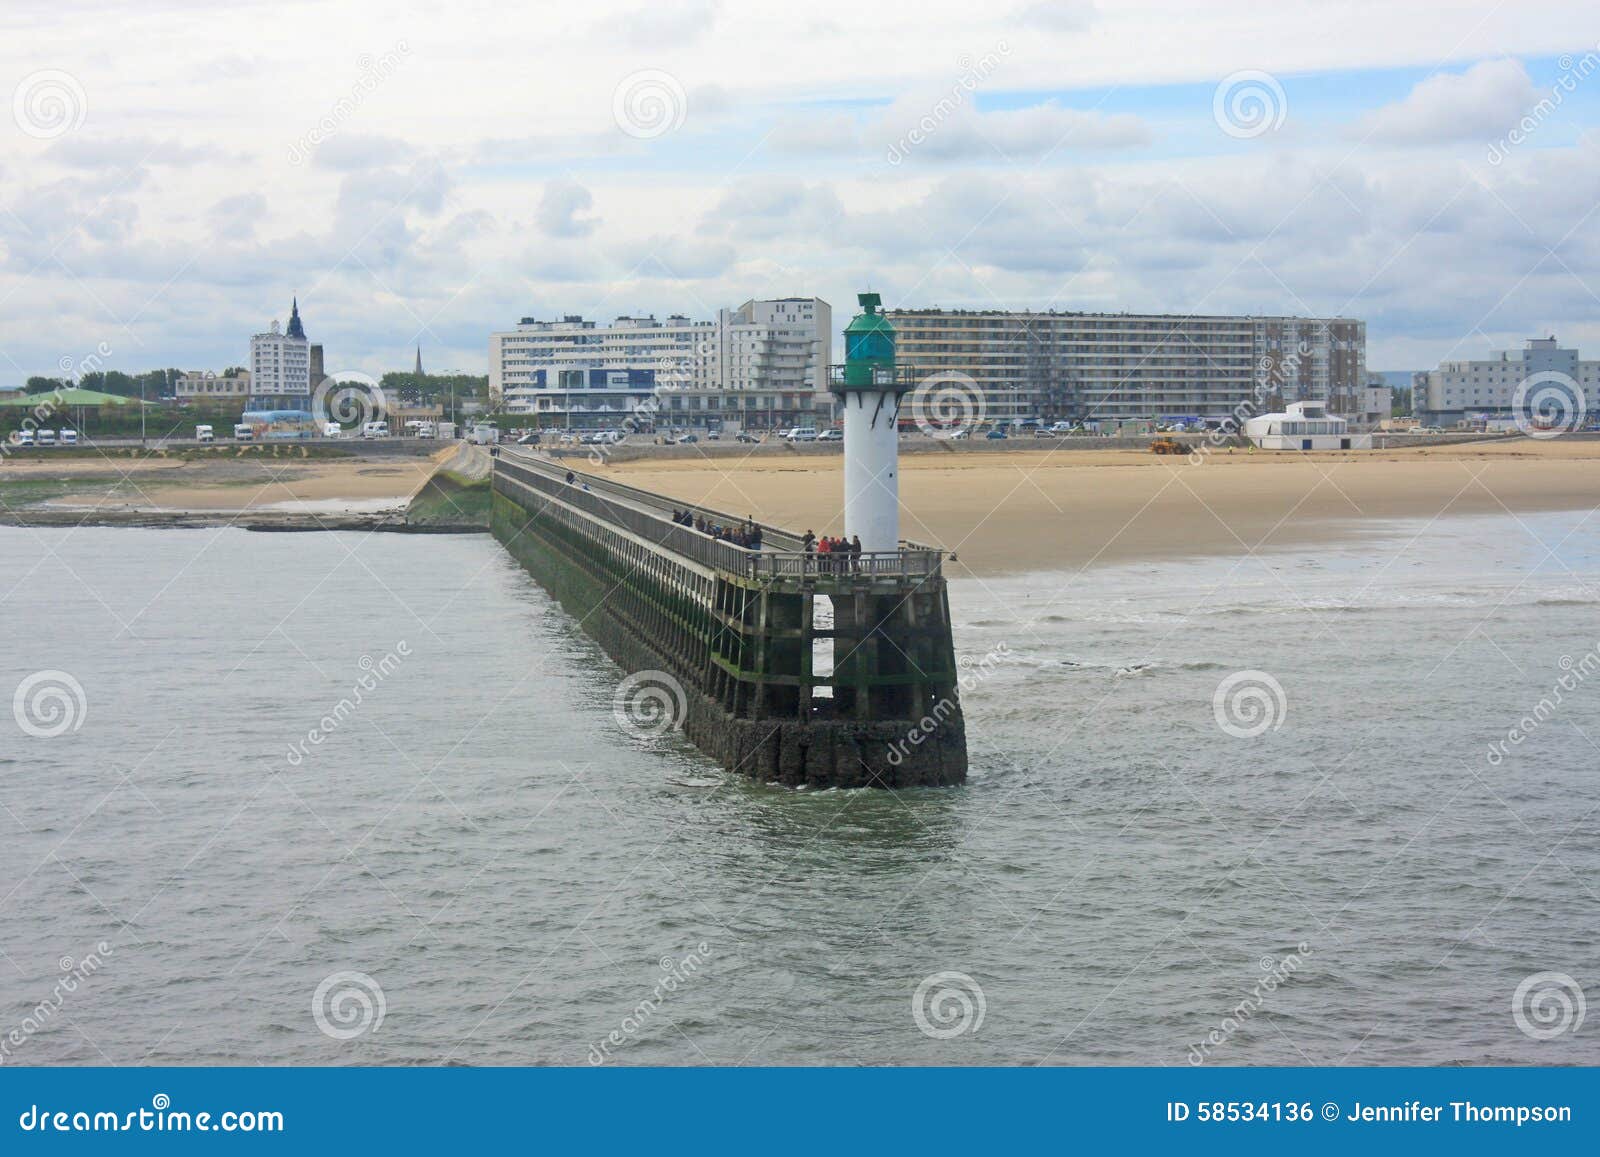 Extremadamente importante Normal dividendo Puerto de Calais foto de archivo. Imagen de costa, ciudad - 58534136